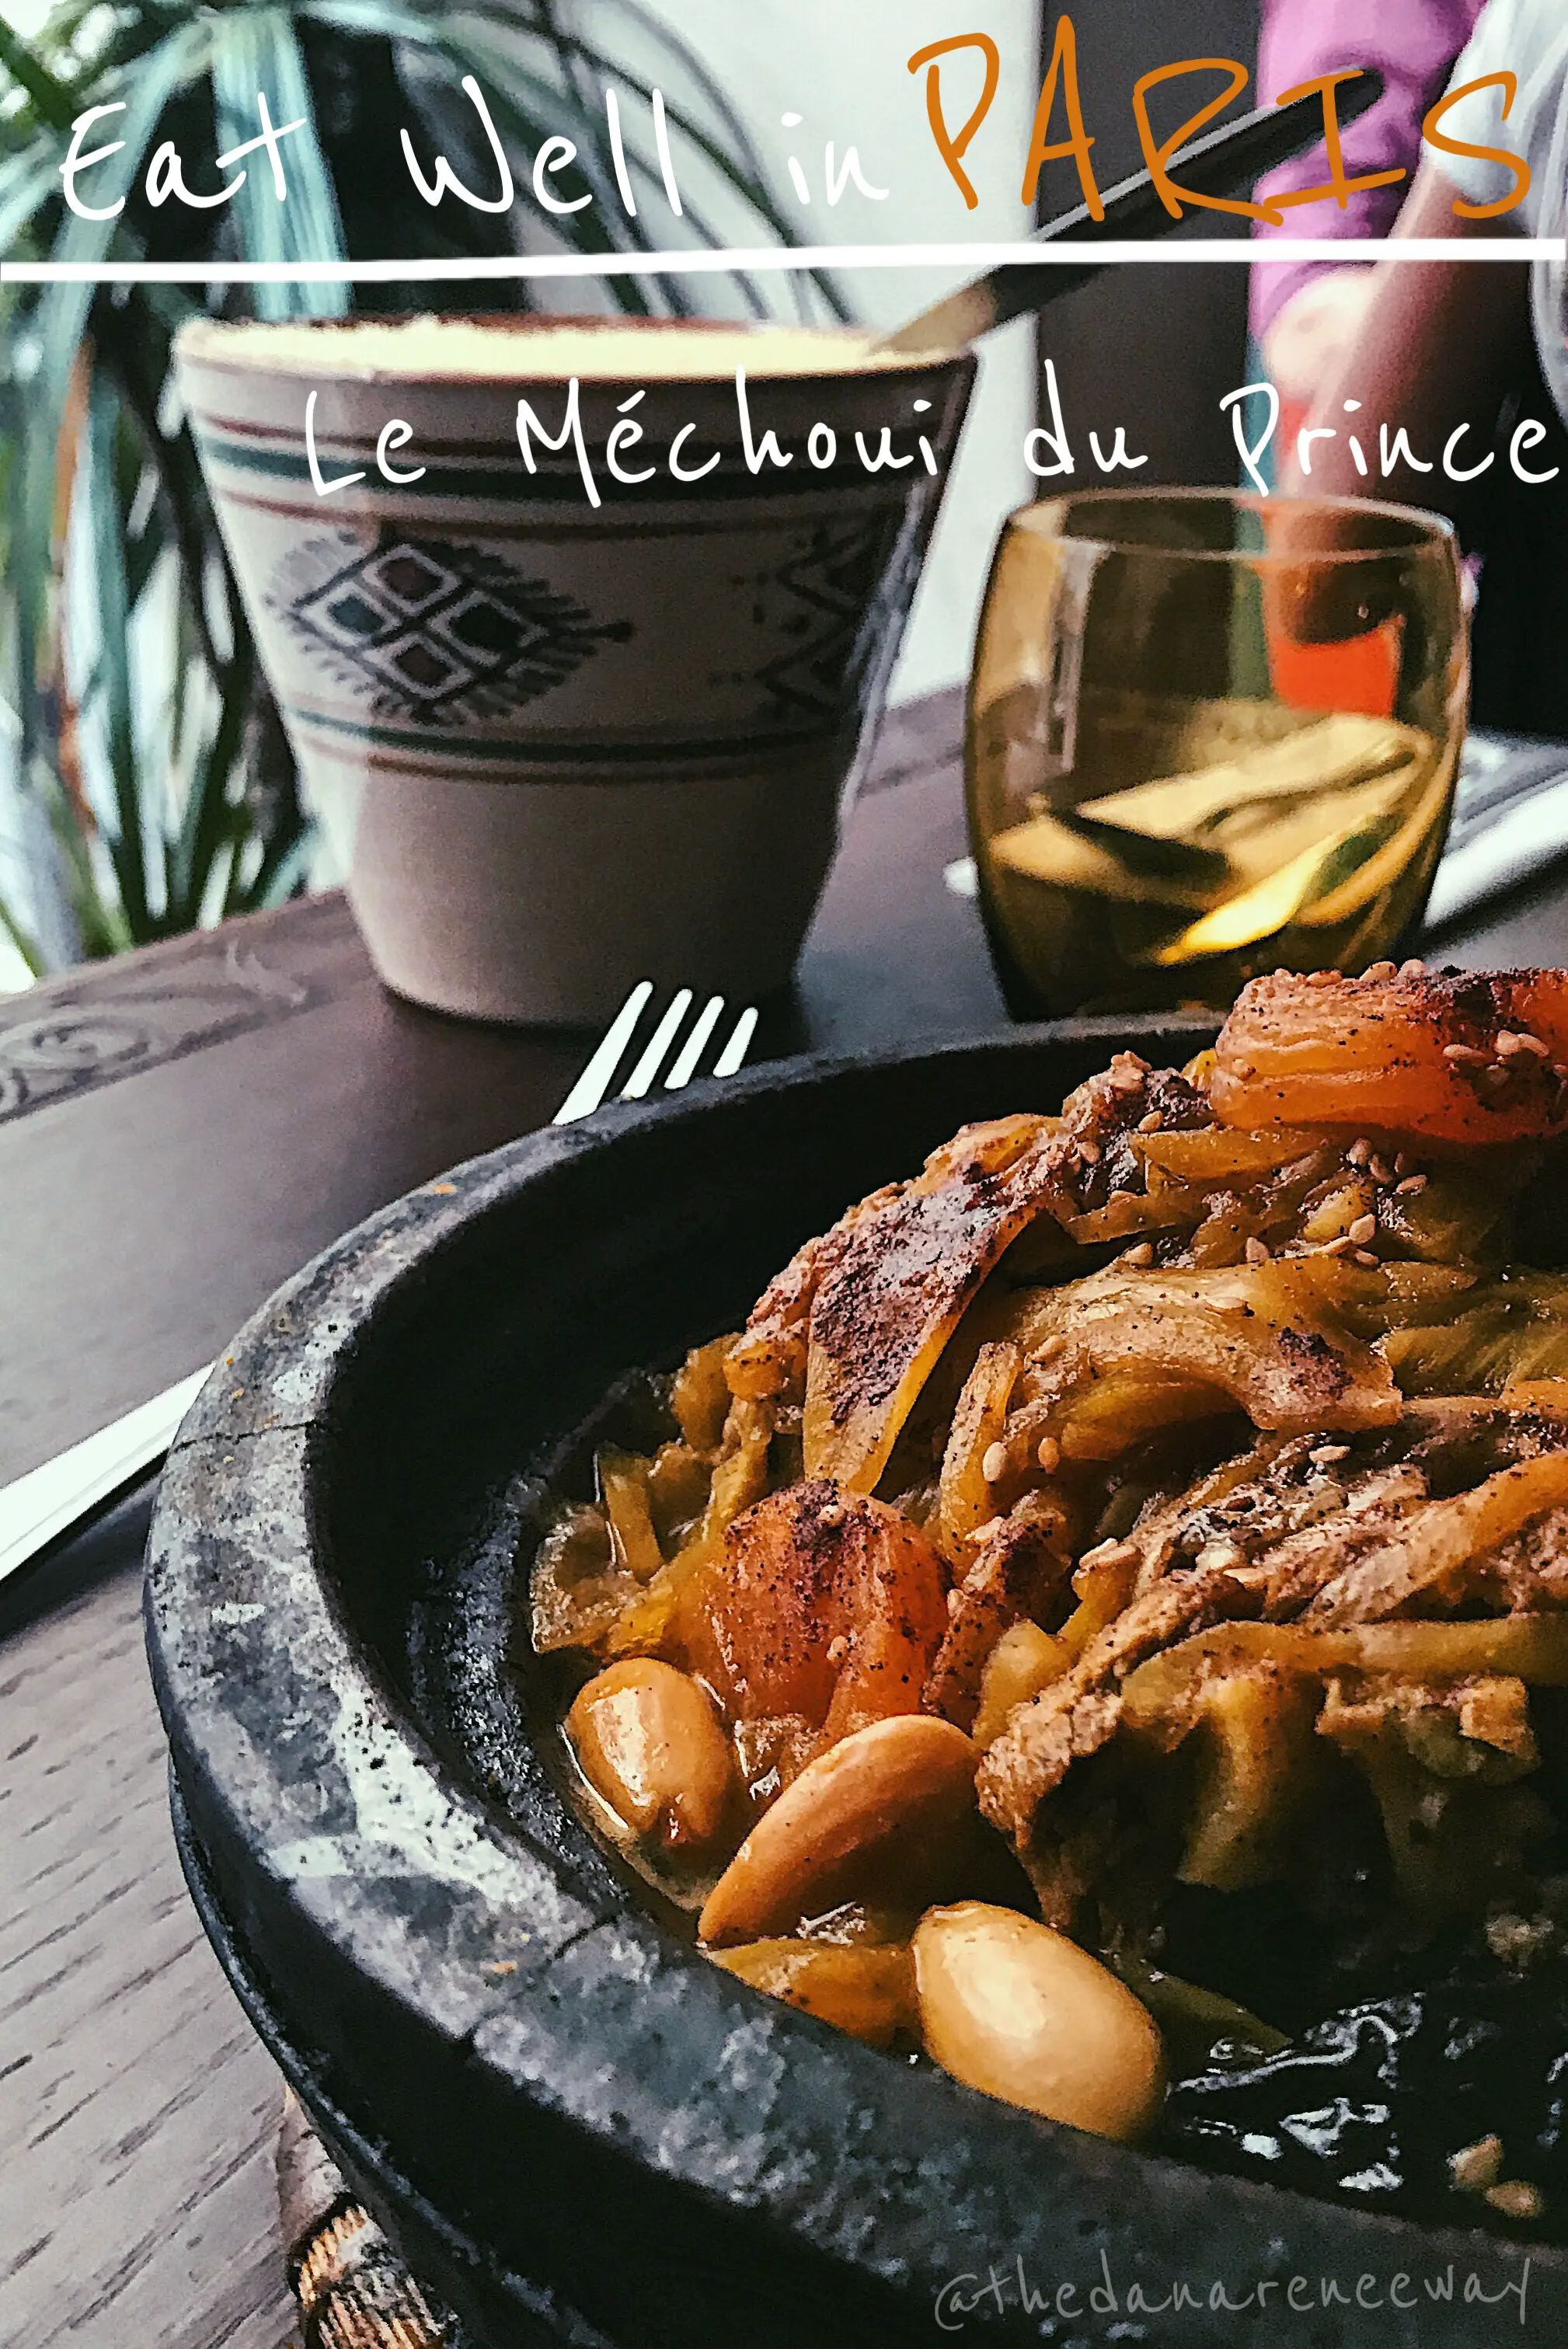 Le Mechoui de Prince in Paris, France